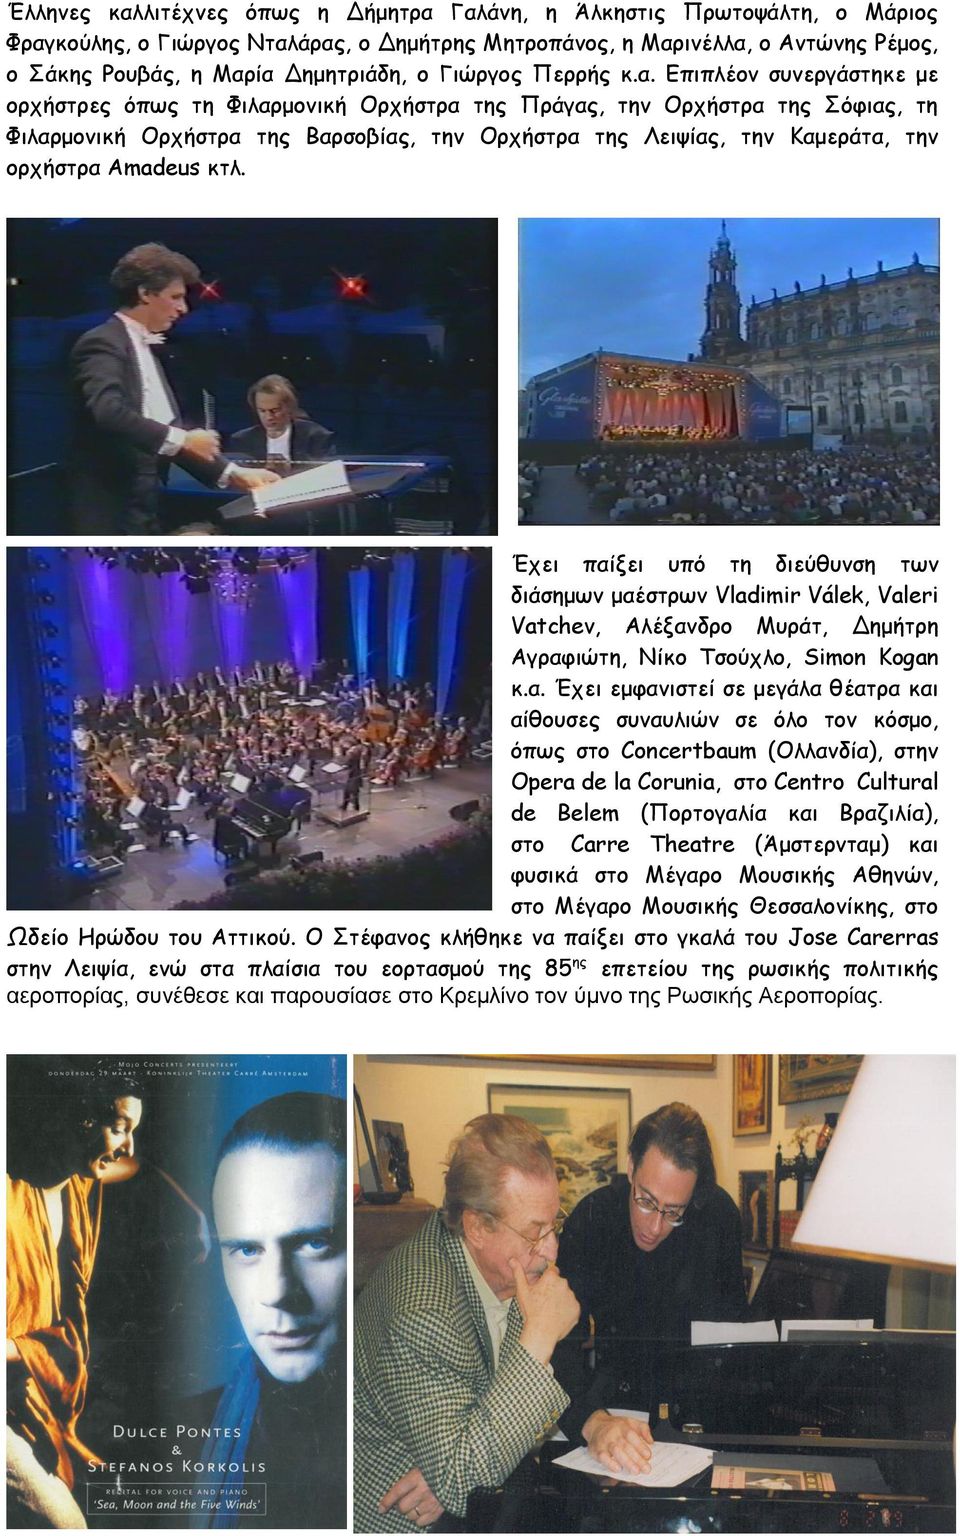 Επιπλέον συνεργάστηκε με ορχήστρες όπως τη Φιλαρμονική Ορχήστρα της Πράγας, την Ορχήστρα της Σόφιας, τη Φιλαρμονική Ορχήστρα της Βαρσοβίας, την Ορχήστρα της Λειψίας, την Καμεράτα, την ορχήστρα